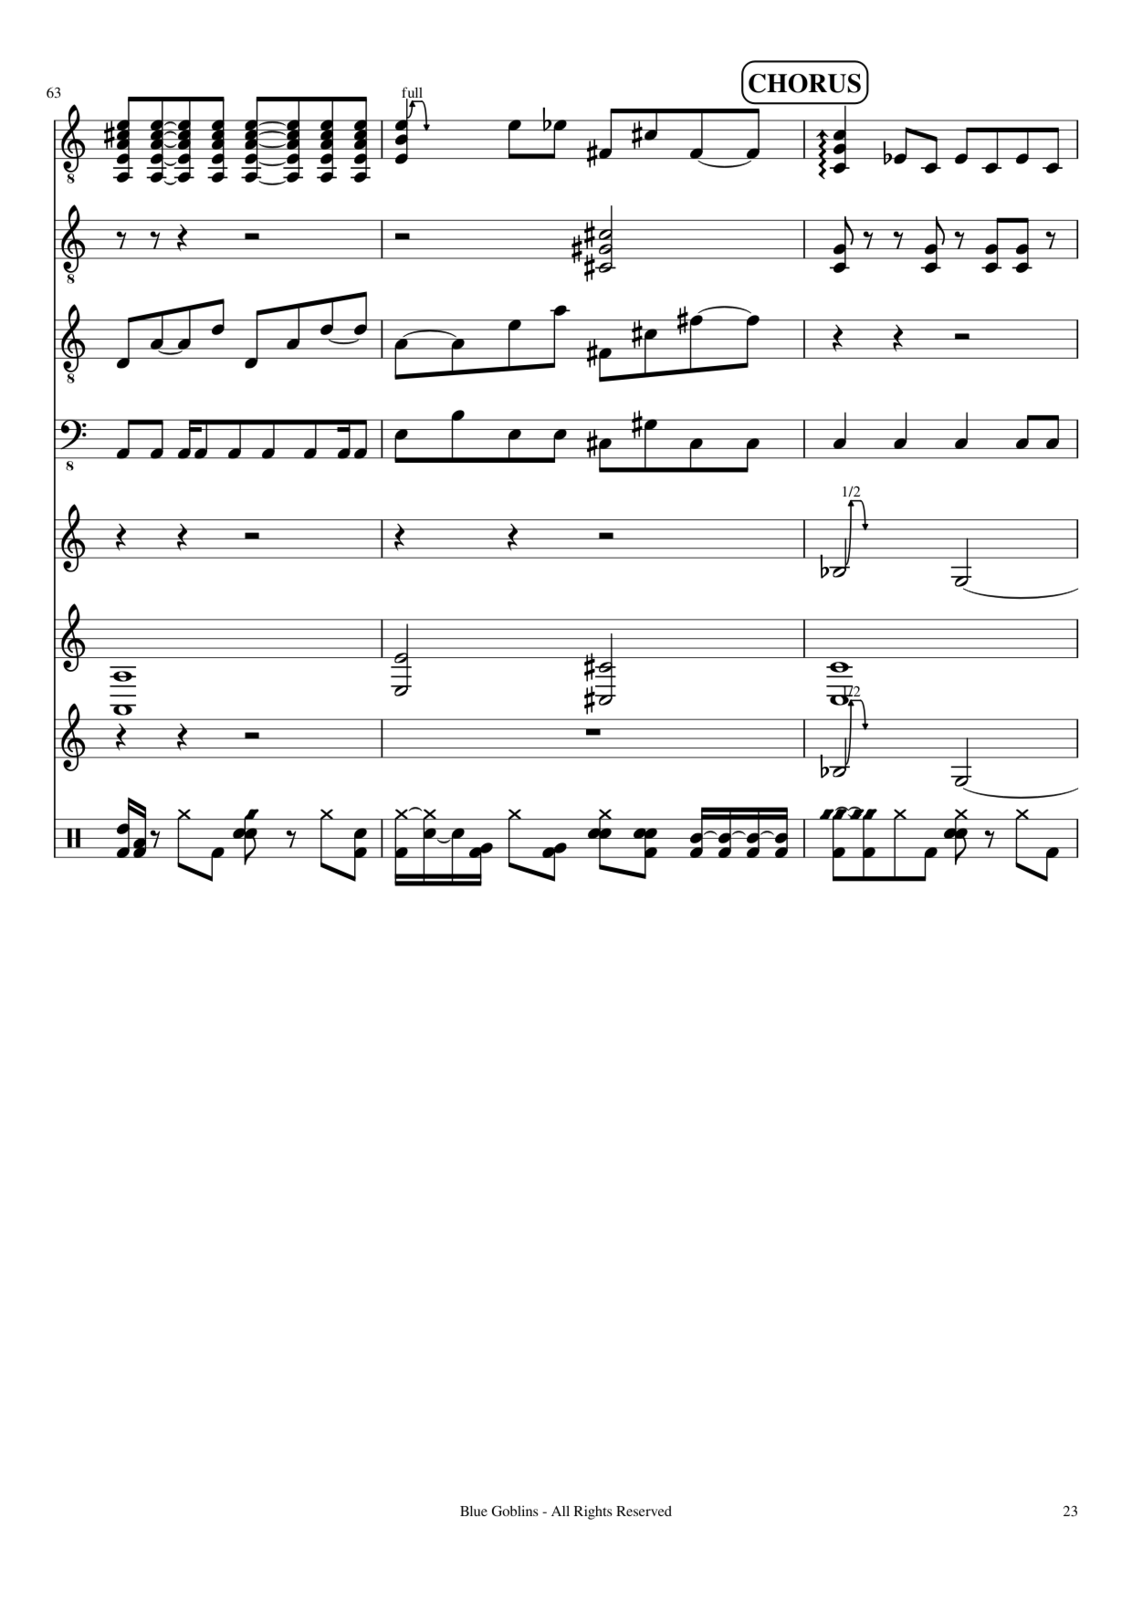 Vechnaya prizrachnaya vstrechnaya slide, Image 17